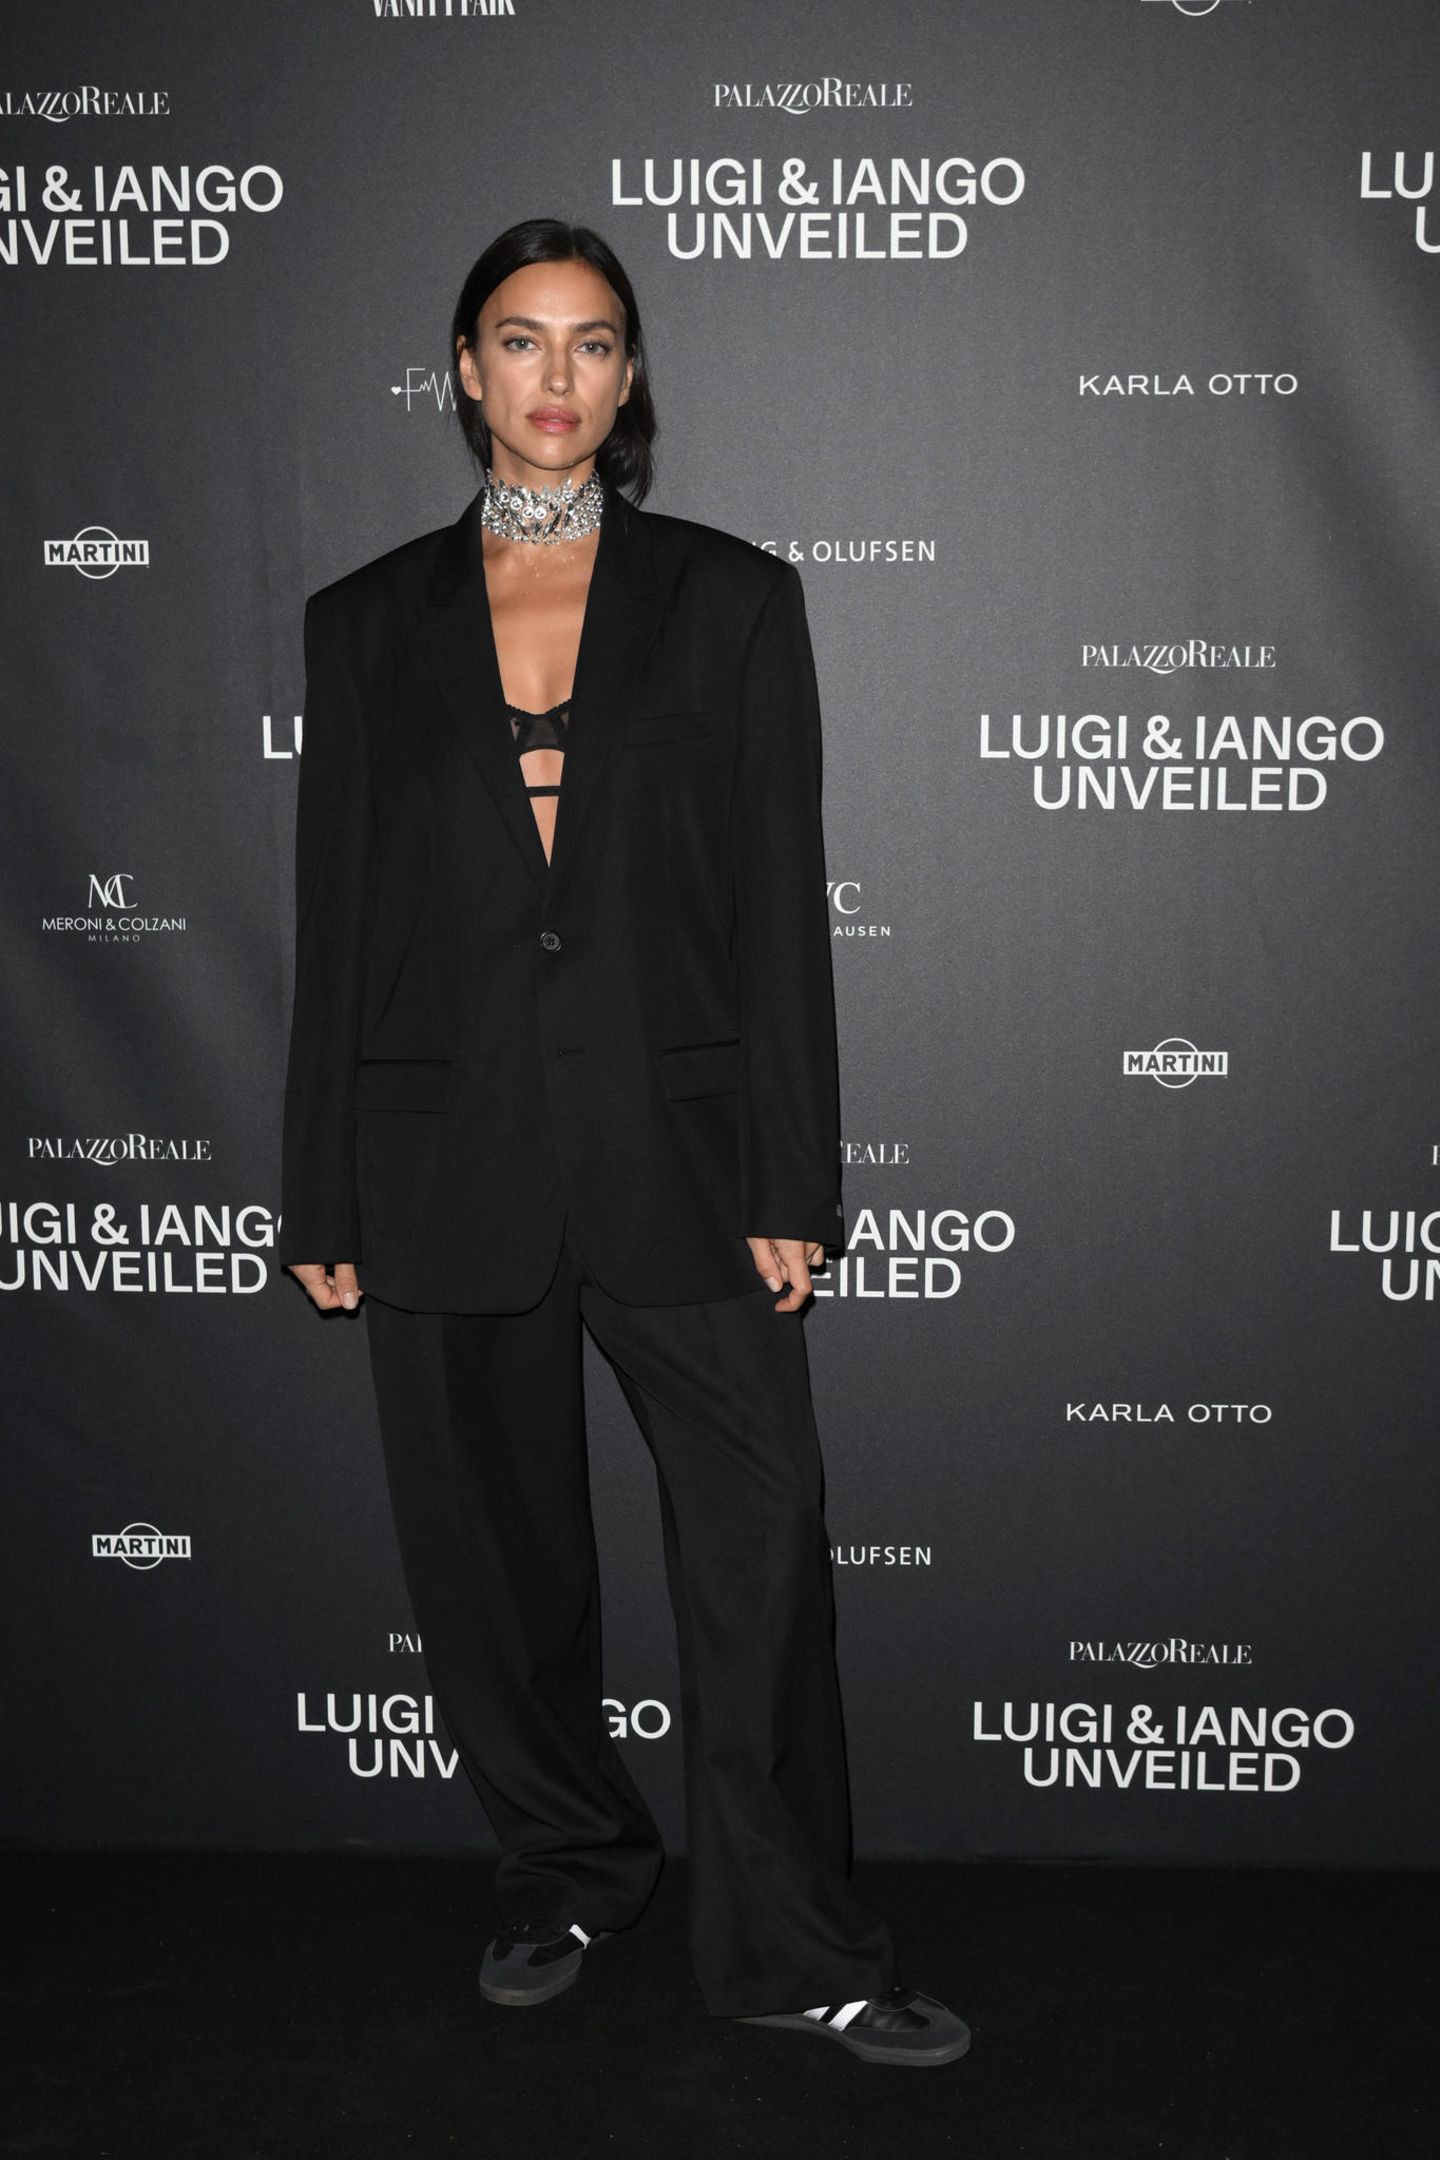 Topmodel Irina Shayk zeigt sich bei der Eröffnung der Fotoausstellung "Luigi & Iango Unveiled" im lässigen Anzug-Look mit BH und Turnschuhen.